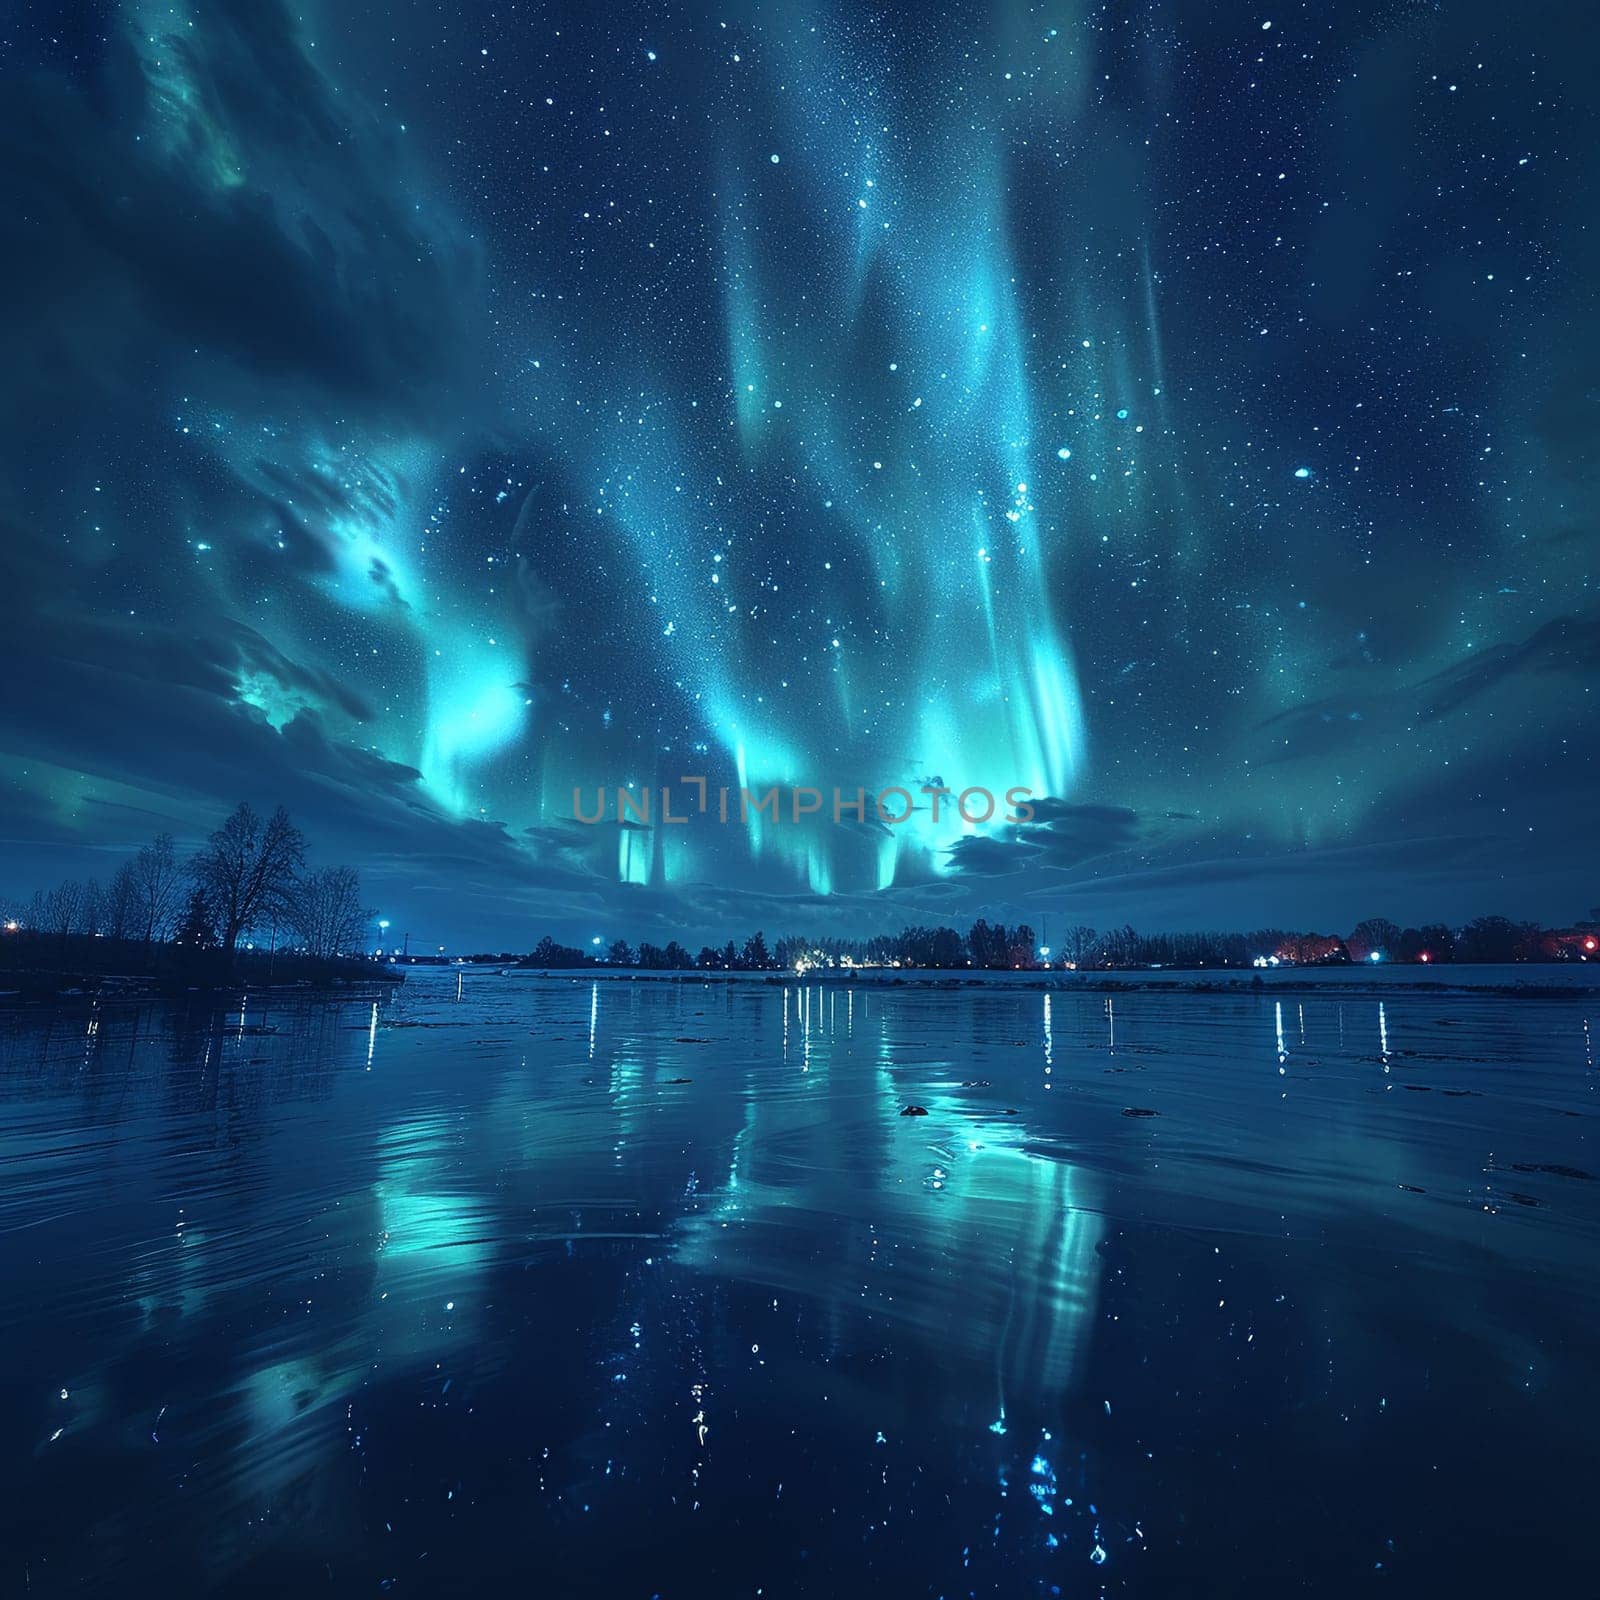 Aurora borealis illuminating the night sky by Benzoix